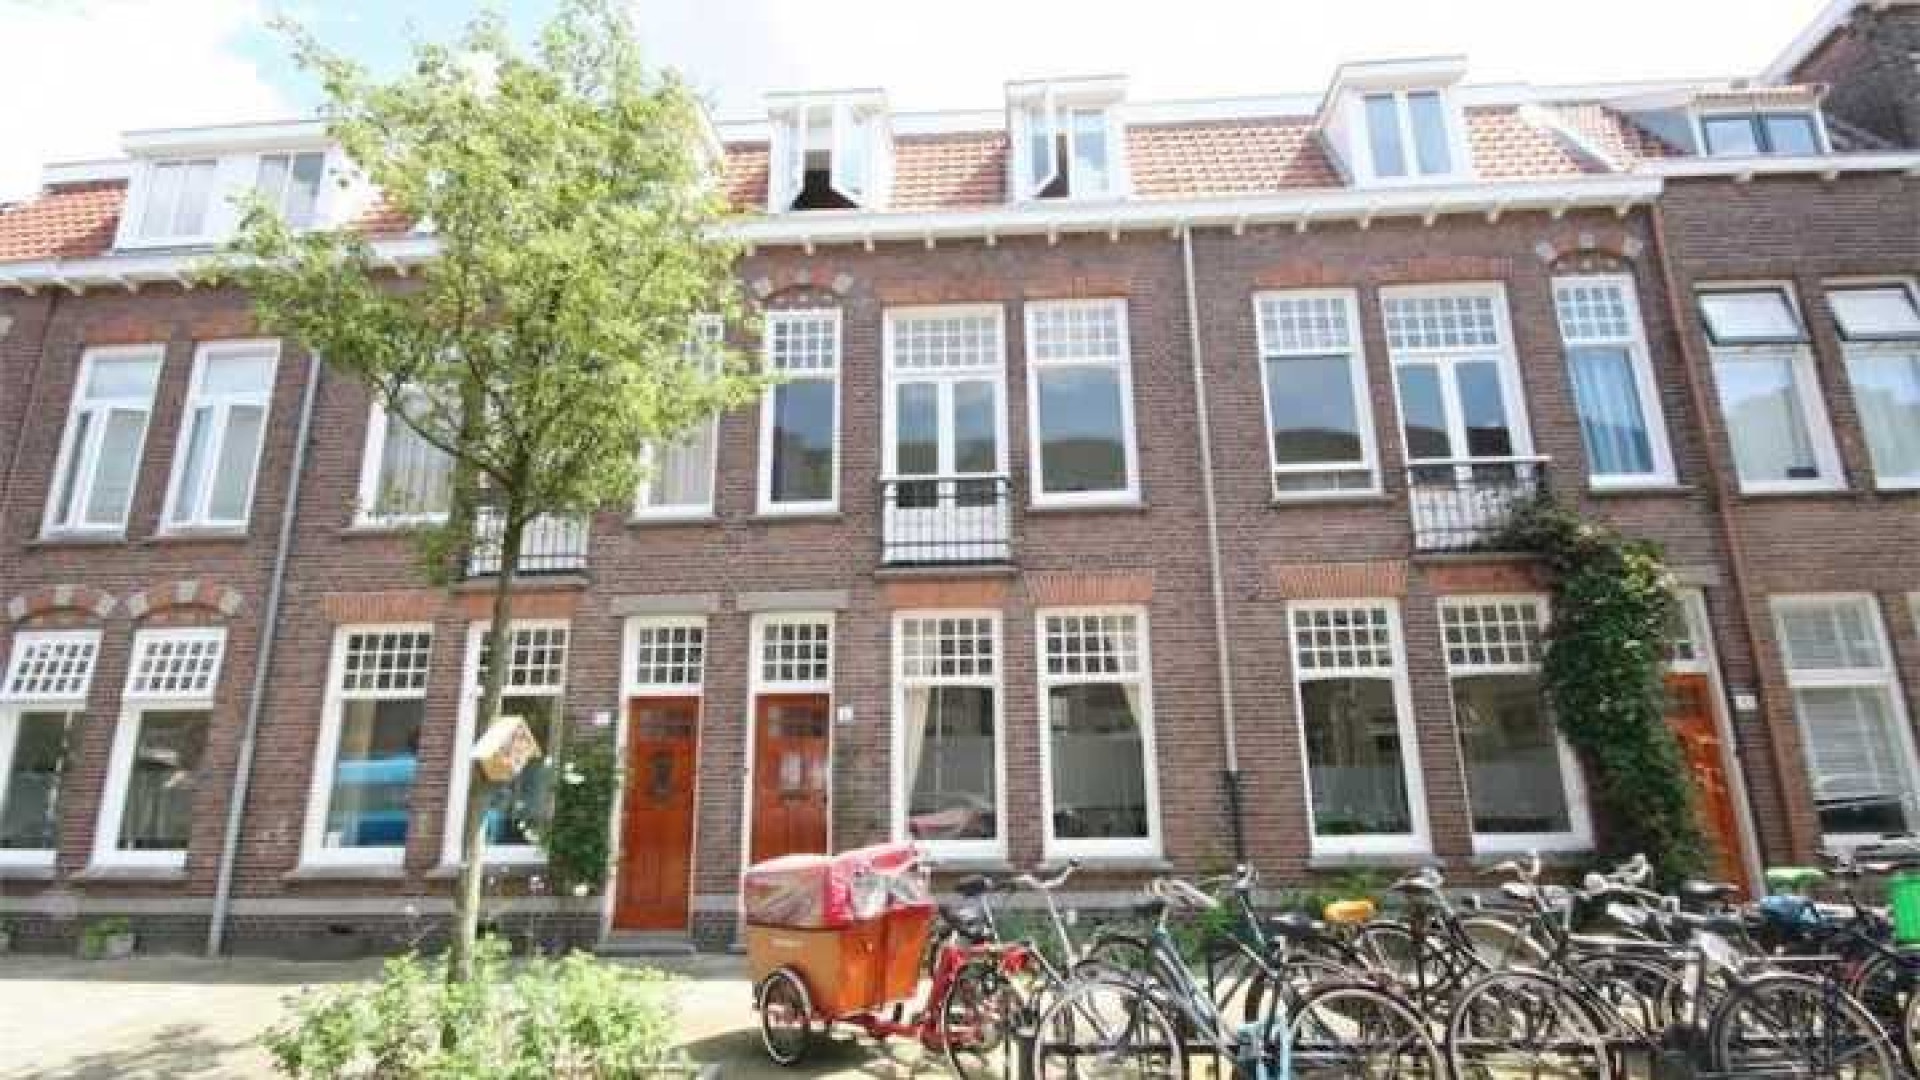 Binnenkijken in prachtige Utrechtse herenhuis van Gouden Kalf winnaar Fedja van Huet. Zie foto's